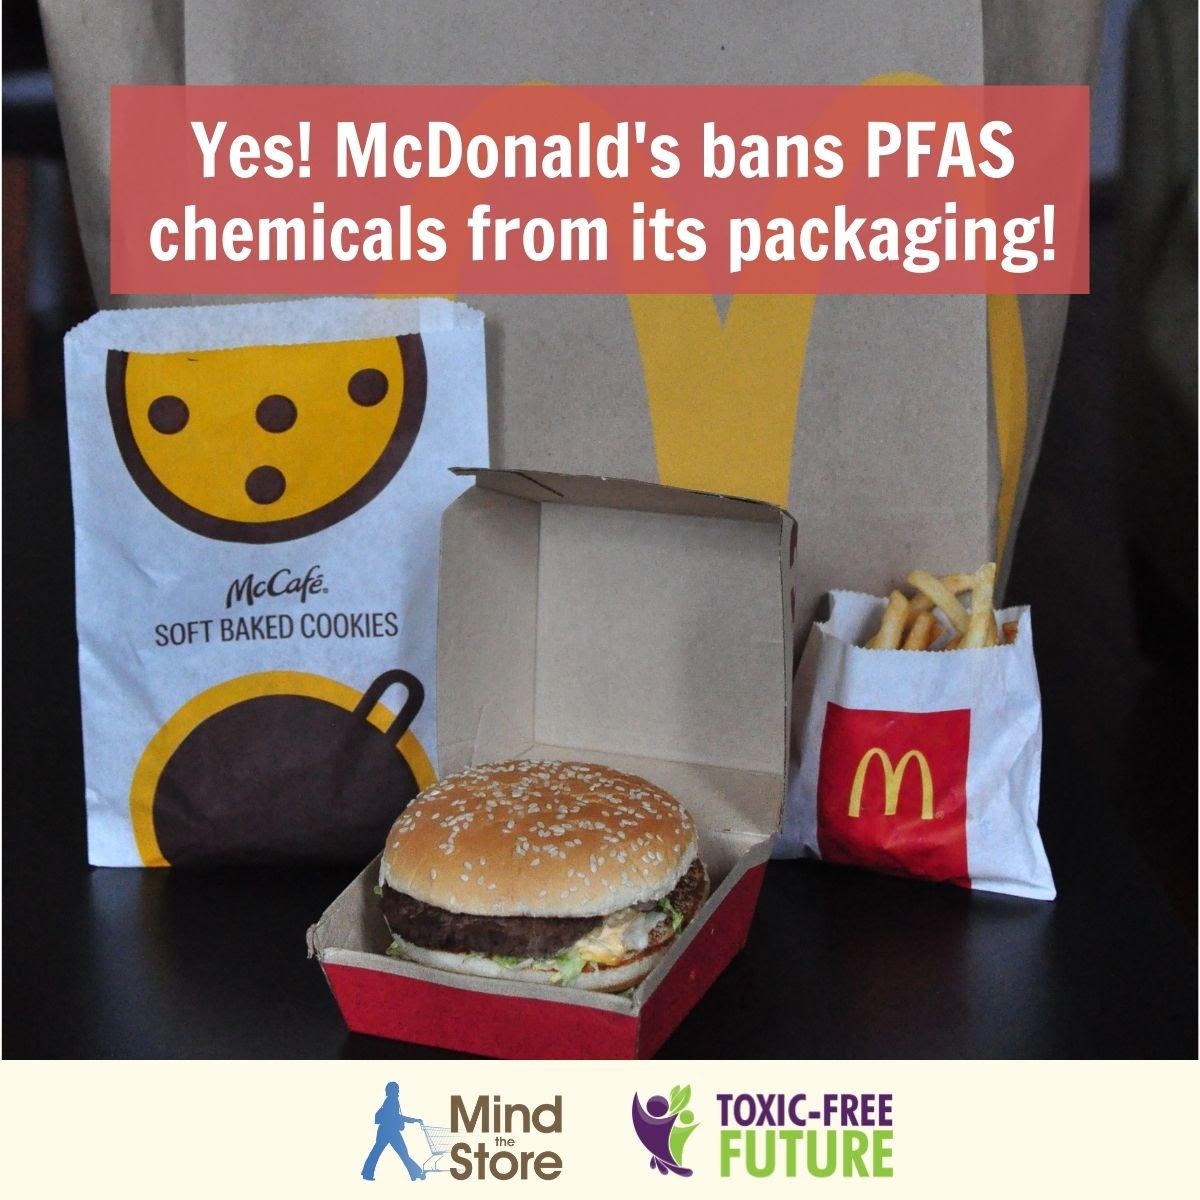 McDonald’s Announces Ban on PFAS Chemicals